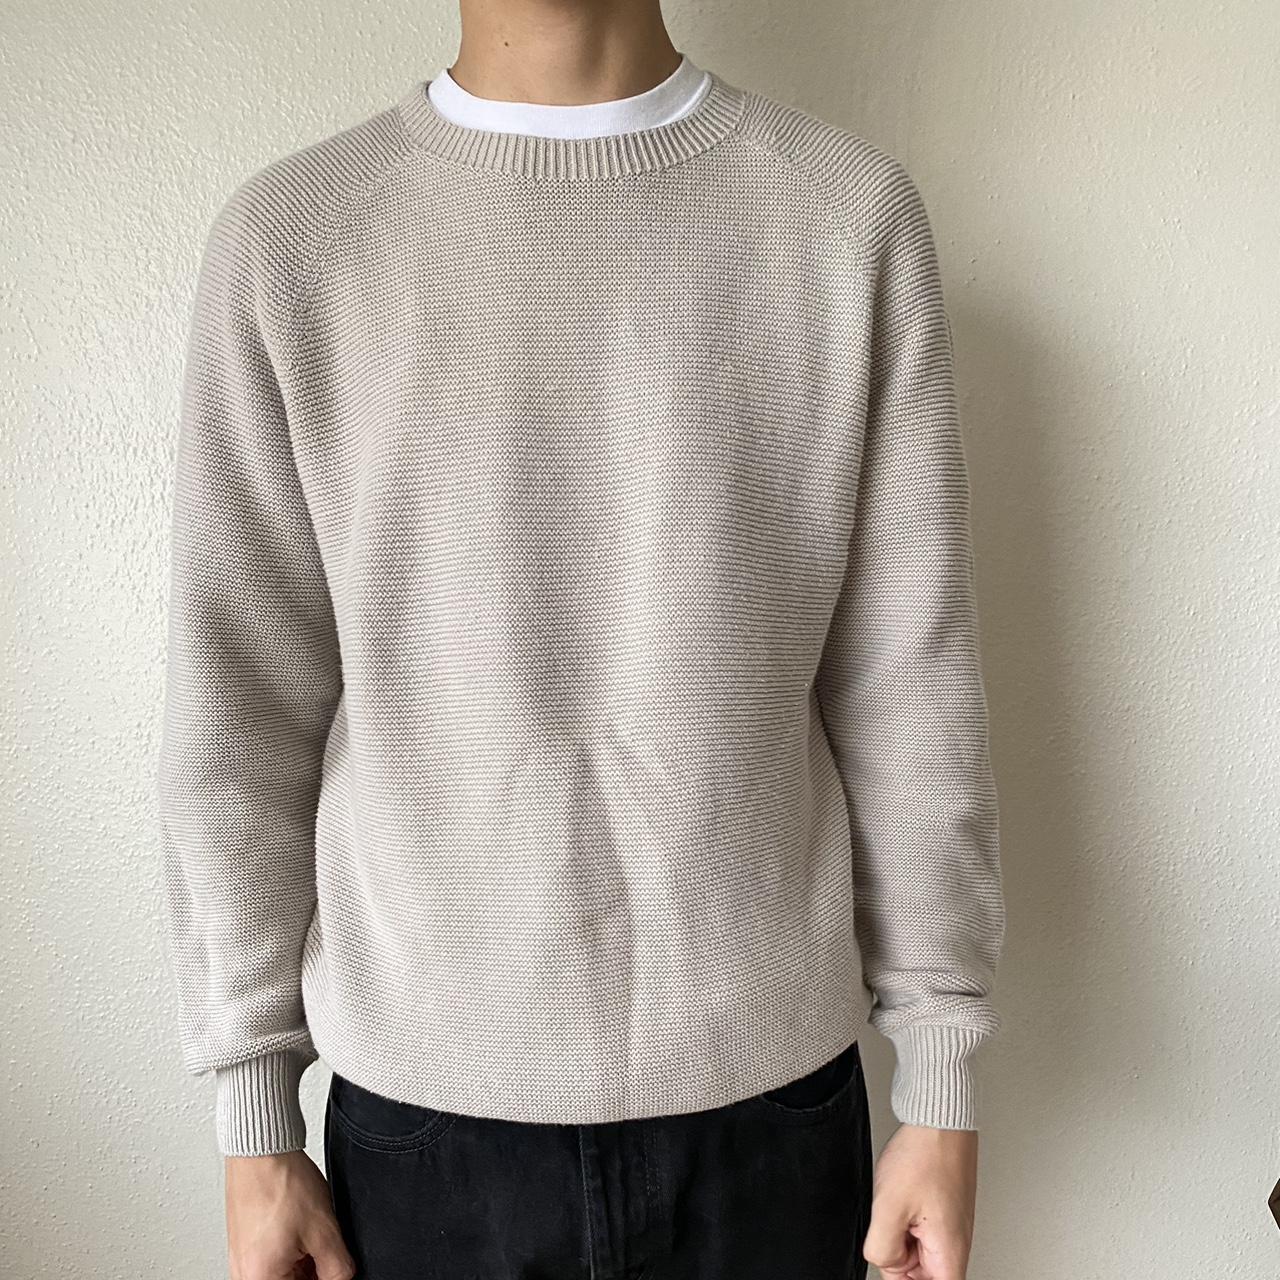 Grey/Beige Uniqlo Sweater Model is 6’2 Barely... - Depop